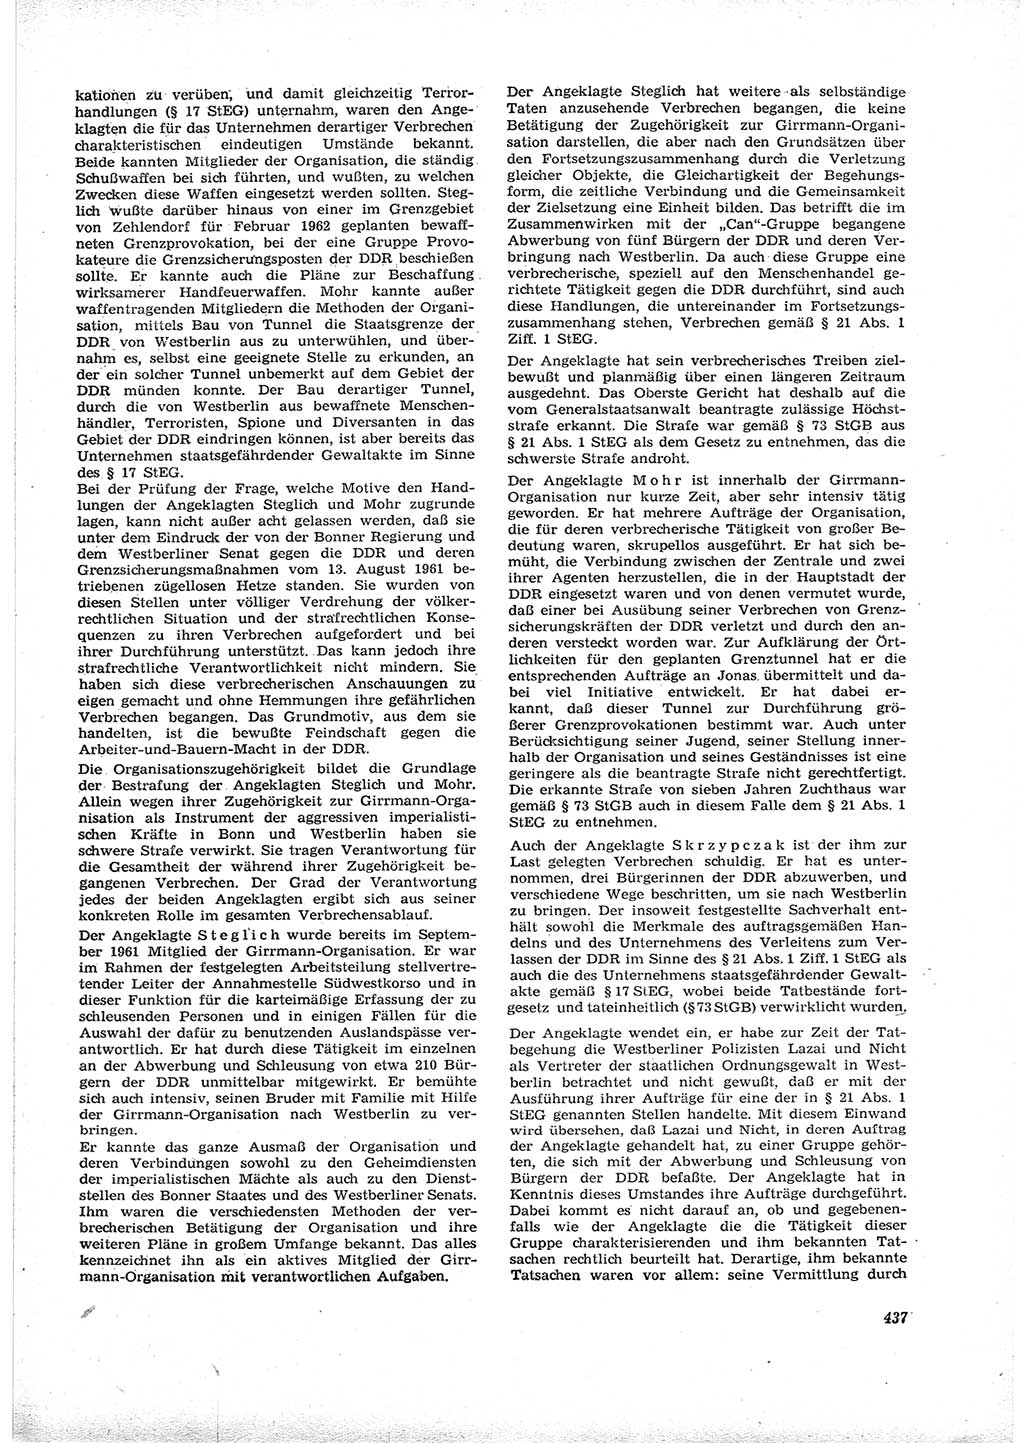 Neue Justiz (NJ), Zeitschrift für Recht und Rechtswissenschaft [Deutsche Demokratische Republik (DDR)], 16. Jahrgang 1962, Seite 437 (NJ DDR 1962, S. 437)